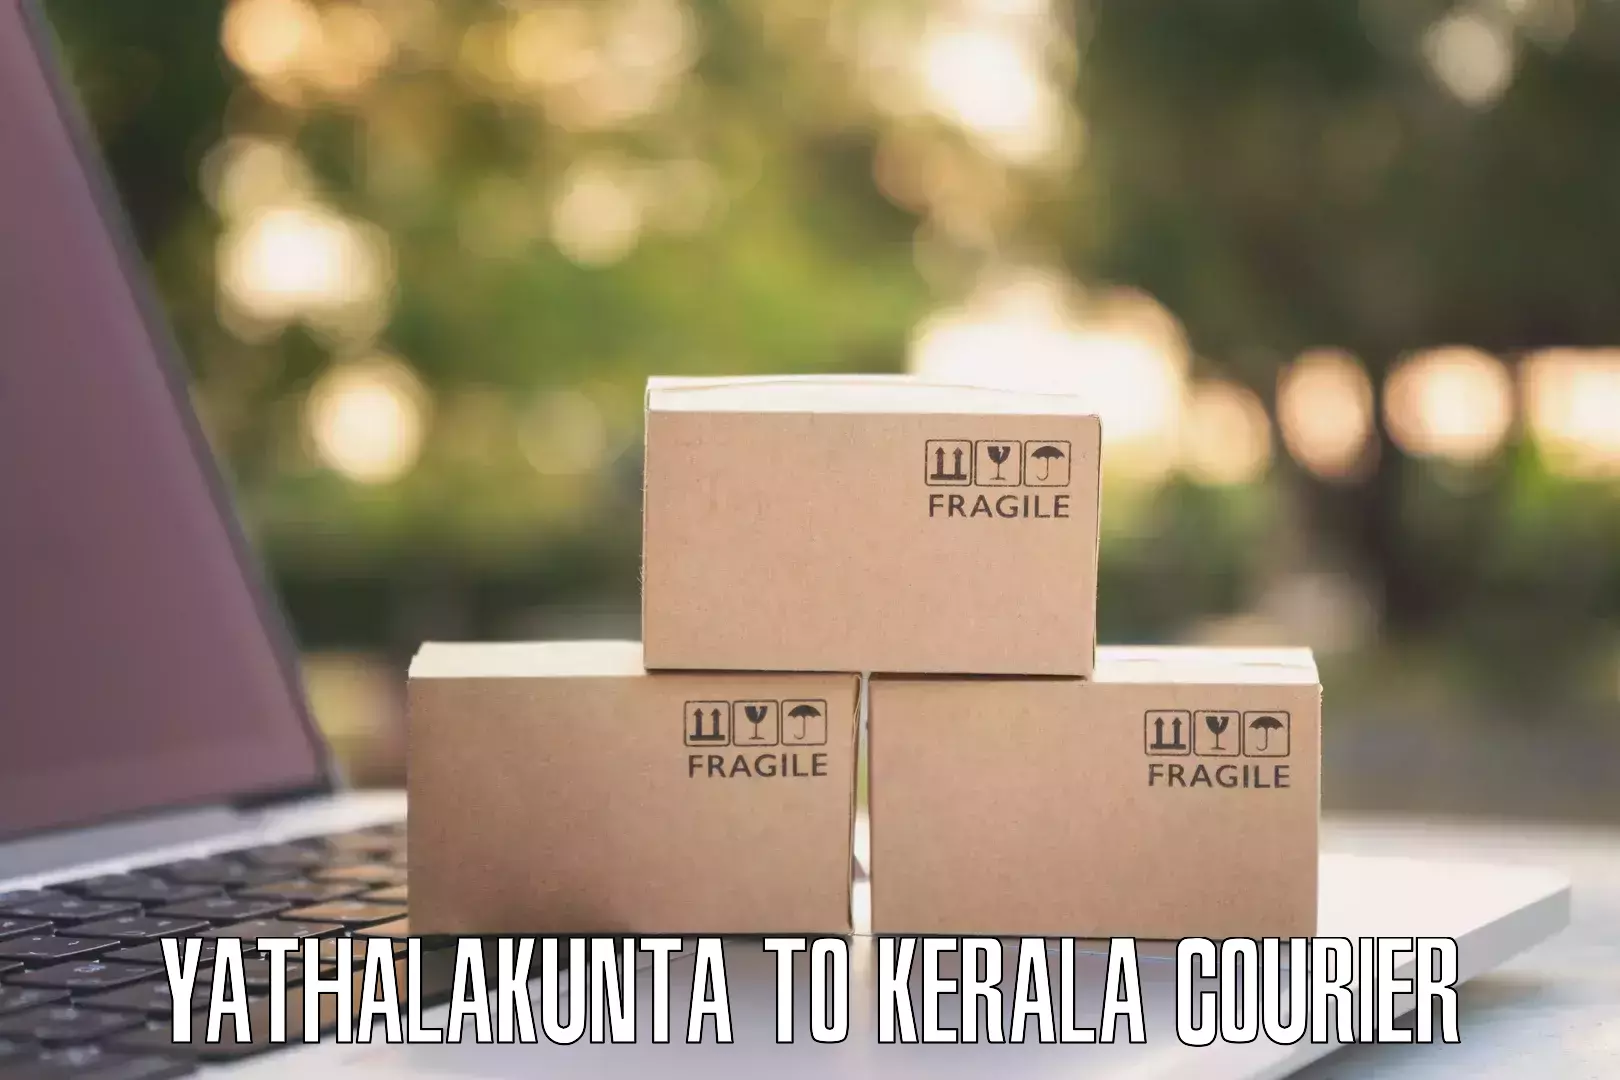 Efficient parcel tracking Yathalakunta to Kerala